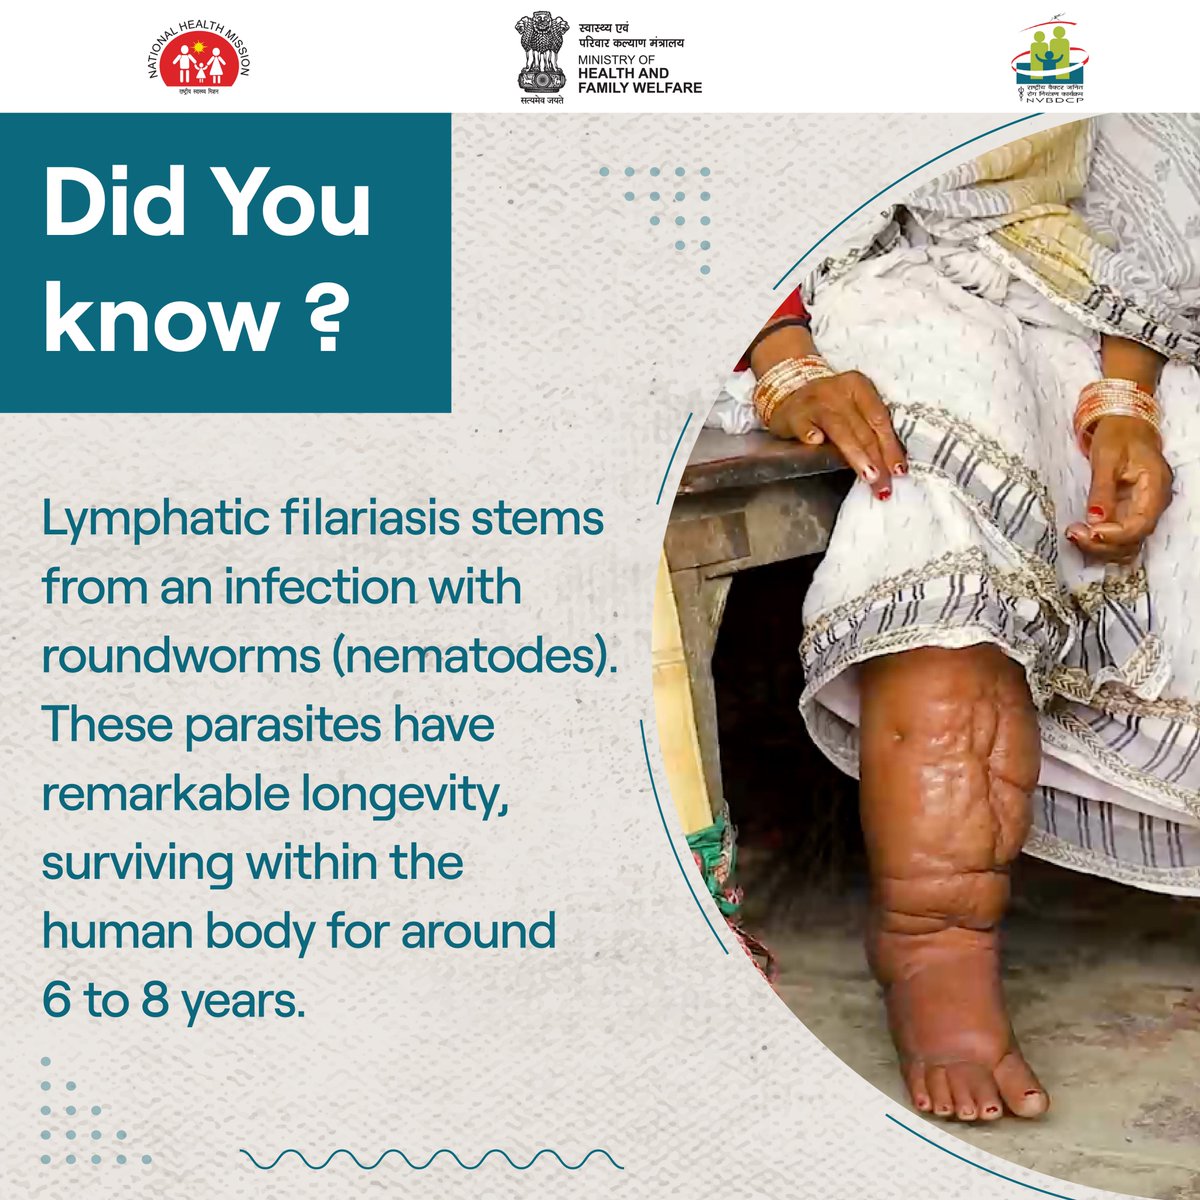 ये कीट कई छोटे लार्वा पैदा करते हैं, जो खून में घूमते रहते हैं और संक्रमण का चक्र जारी रखते हैं। ये कीट लसीका प्रणाली (lymphatic system) को प्रभावित करते हैं।

बीमारी के फैलाव को रोकने के लिए सरकार द्वारा किये गए प्रयासों का सहयोग ज़रूर करें।

#NTDFreeIndia #LFFreeIndia #BeatNTDs